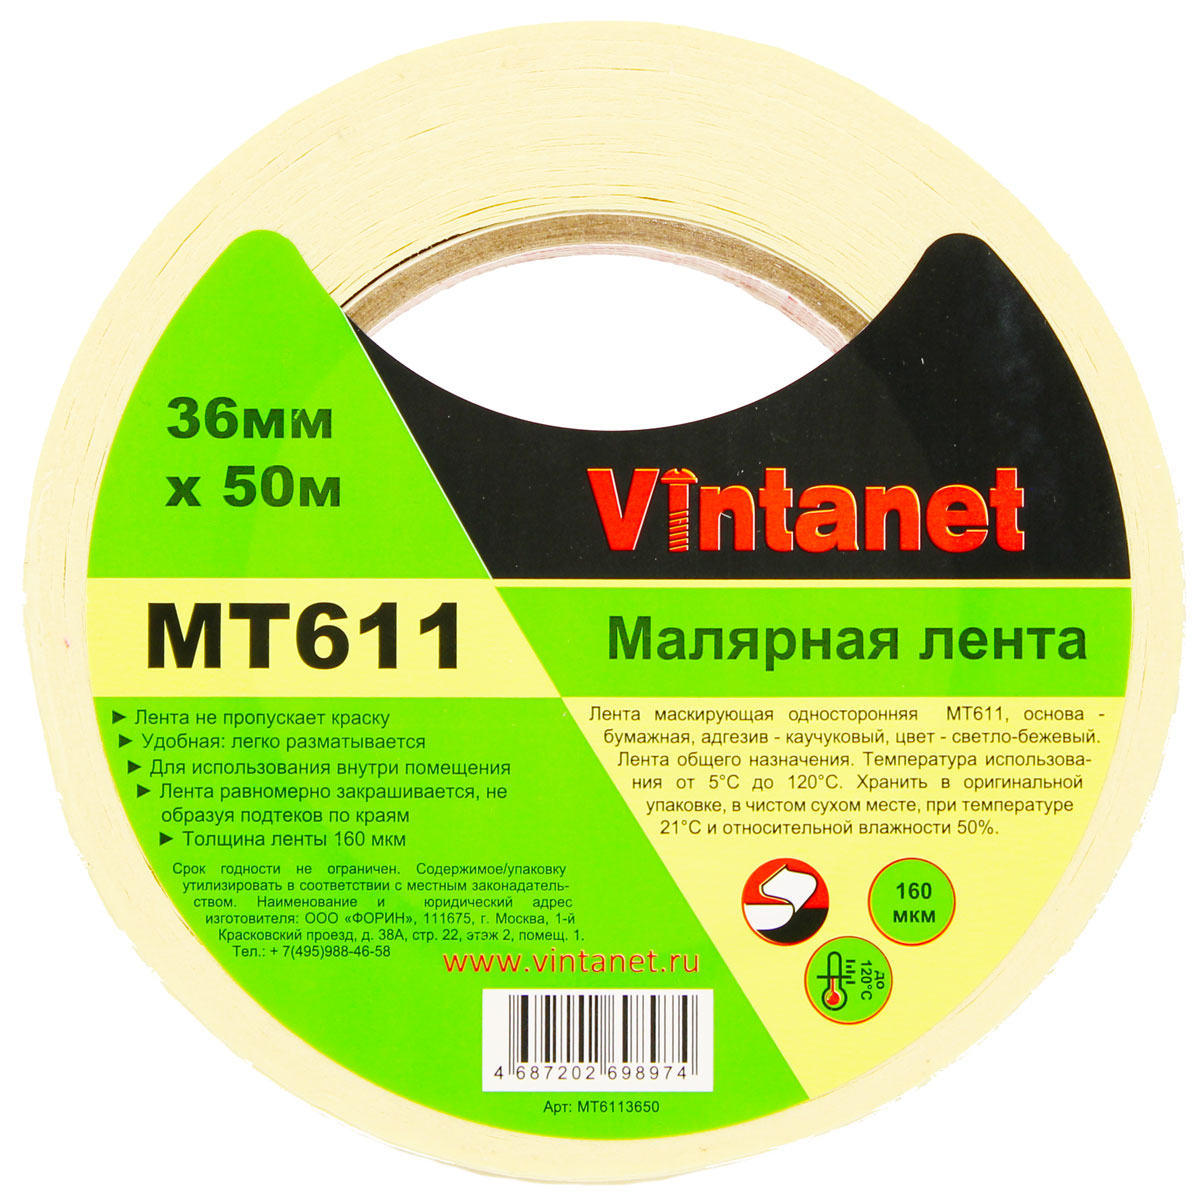 Лента малярная высокотемпературная Vintanet MT611, 120 С, 160 мкм, 36мм х 50м, MT6113650 универсальная экстра тонкая малярная лента color expert